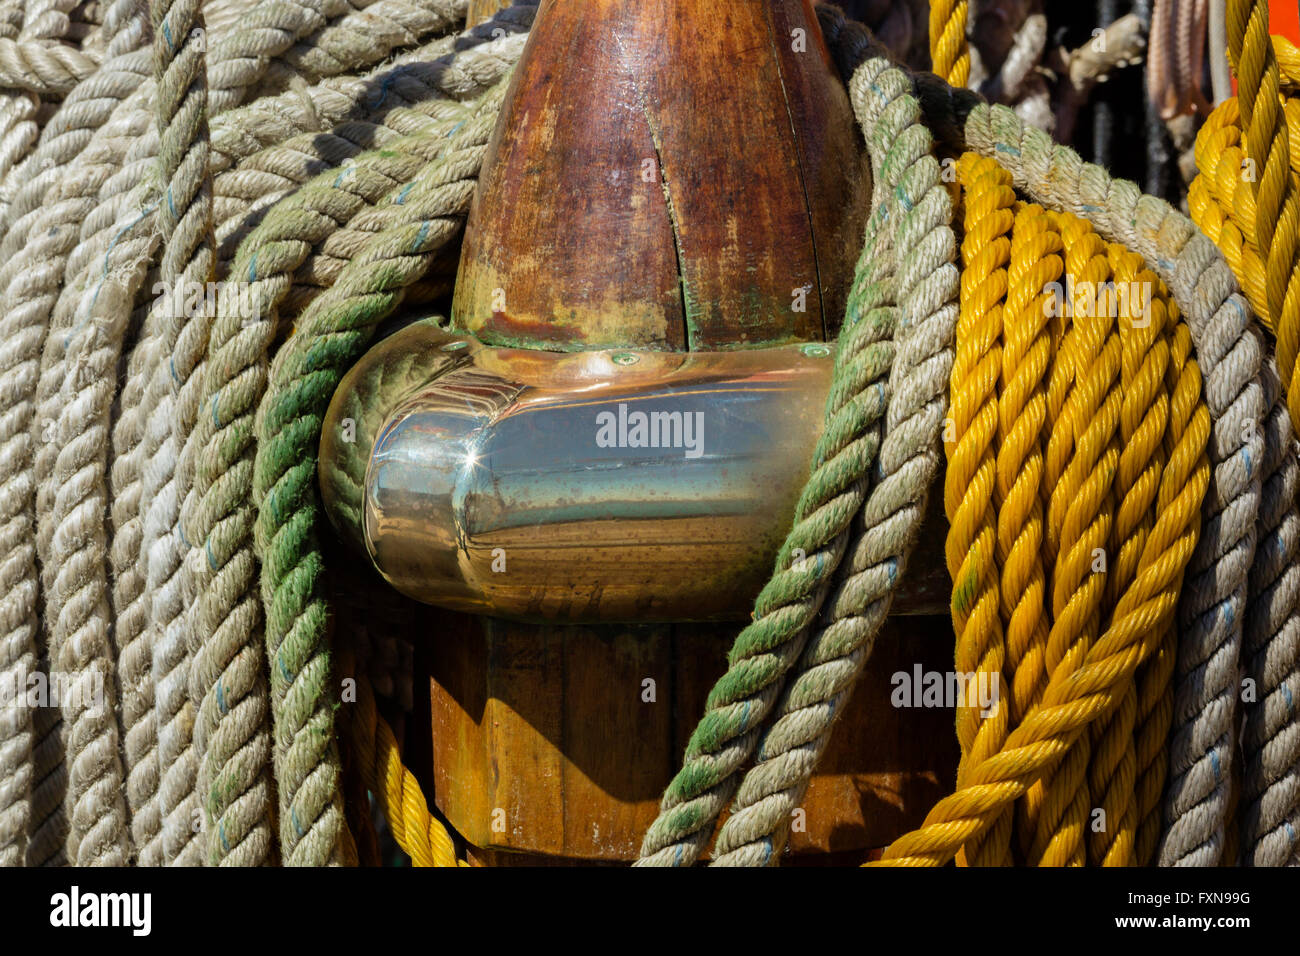 Rops, sailing ship Stock Photo